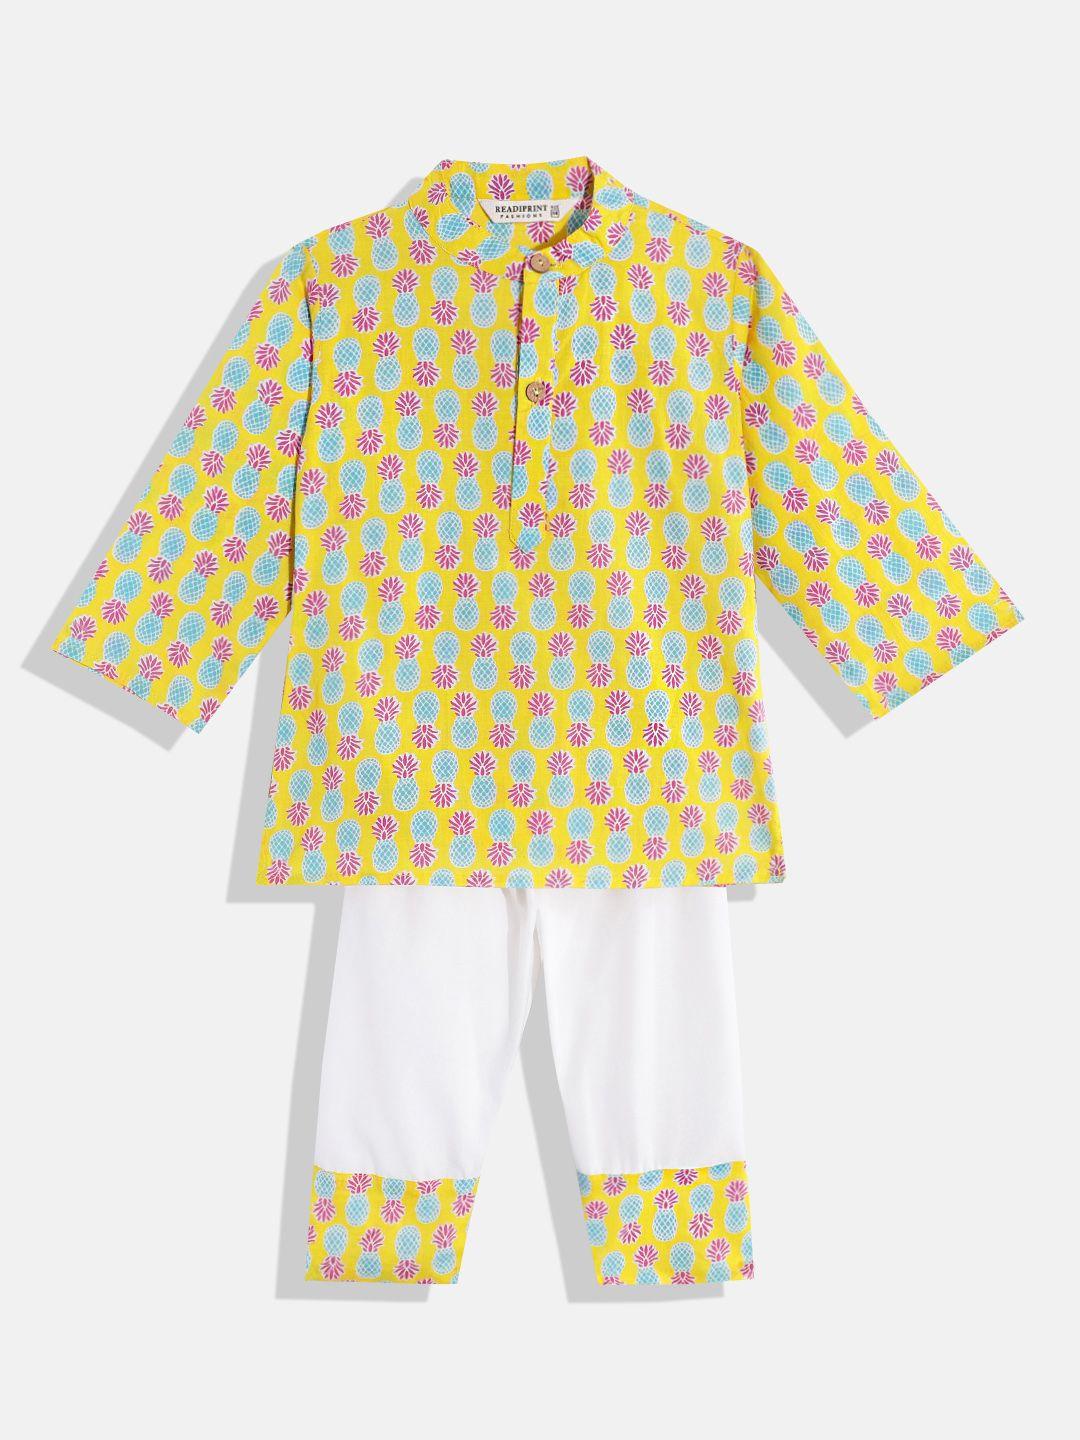 Readiprint Fashions Boys Printed Pure Cotton Kurta With Pyjamas